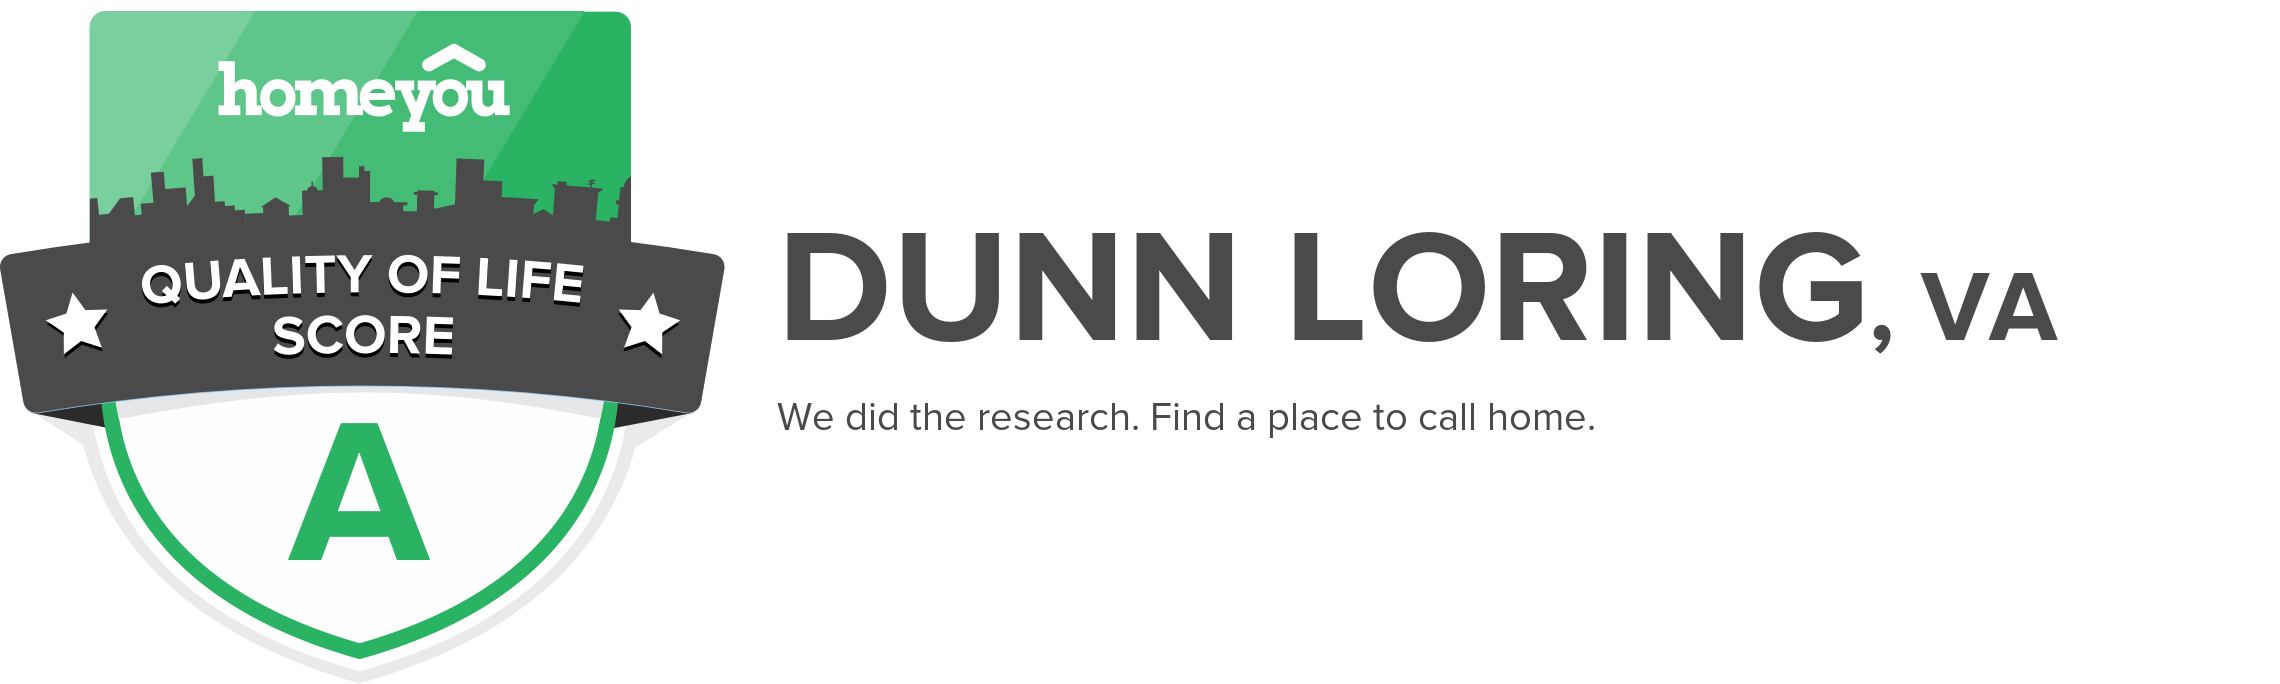 Dunn Loring, VA